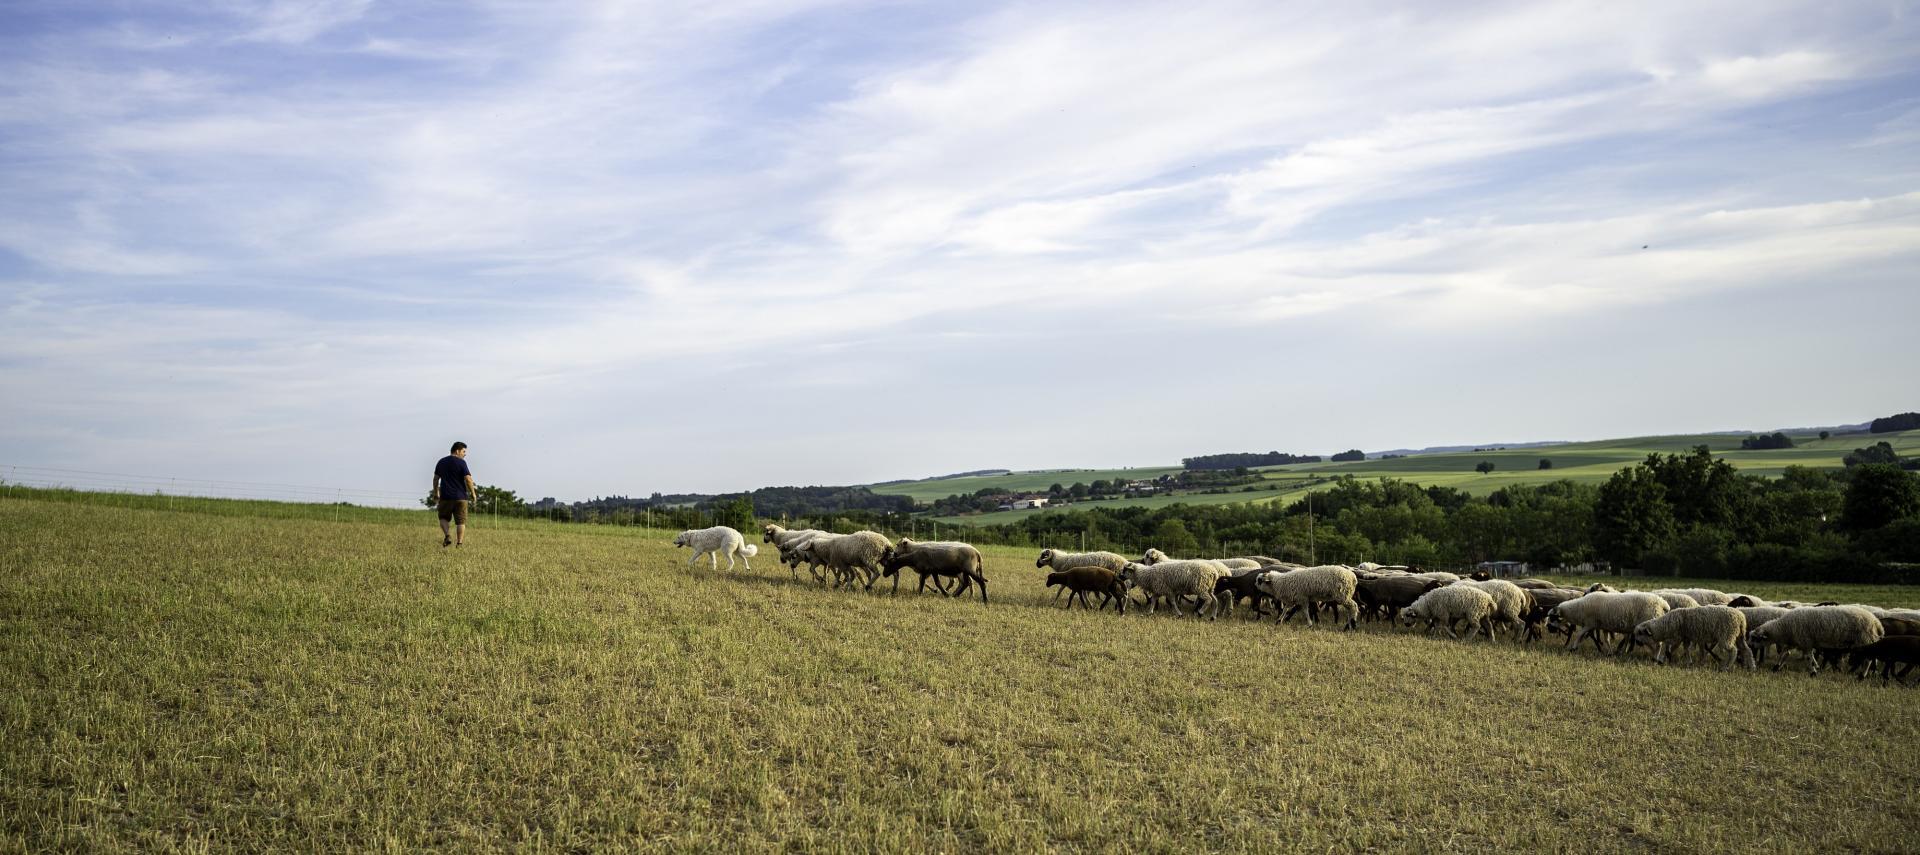 Elevage de moutons en plein air, viande d'agneau d'exception, ovins en parfaite santé! Vente directe. Fleury-La-Vallée, Yonne